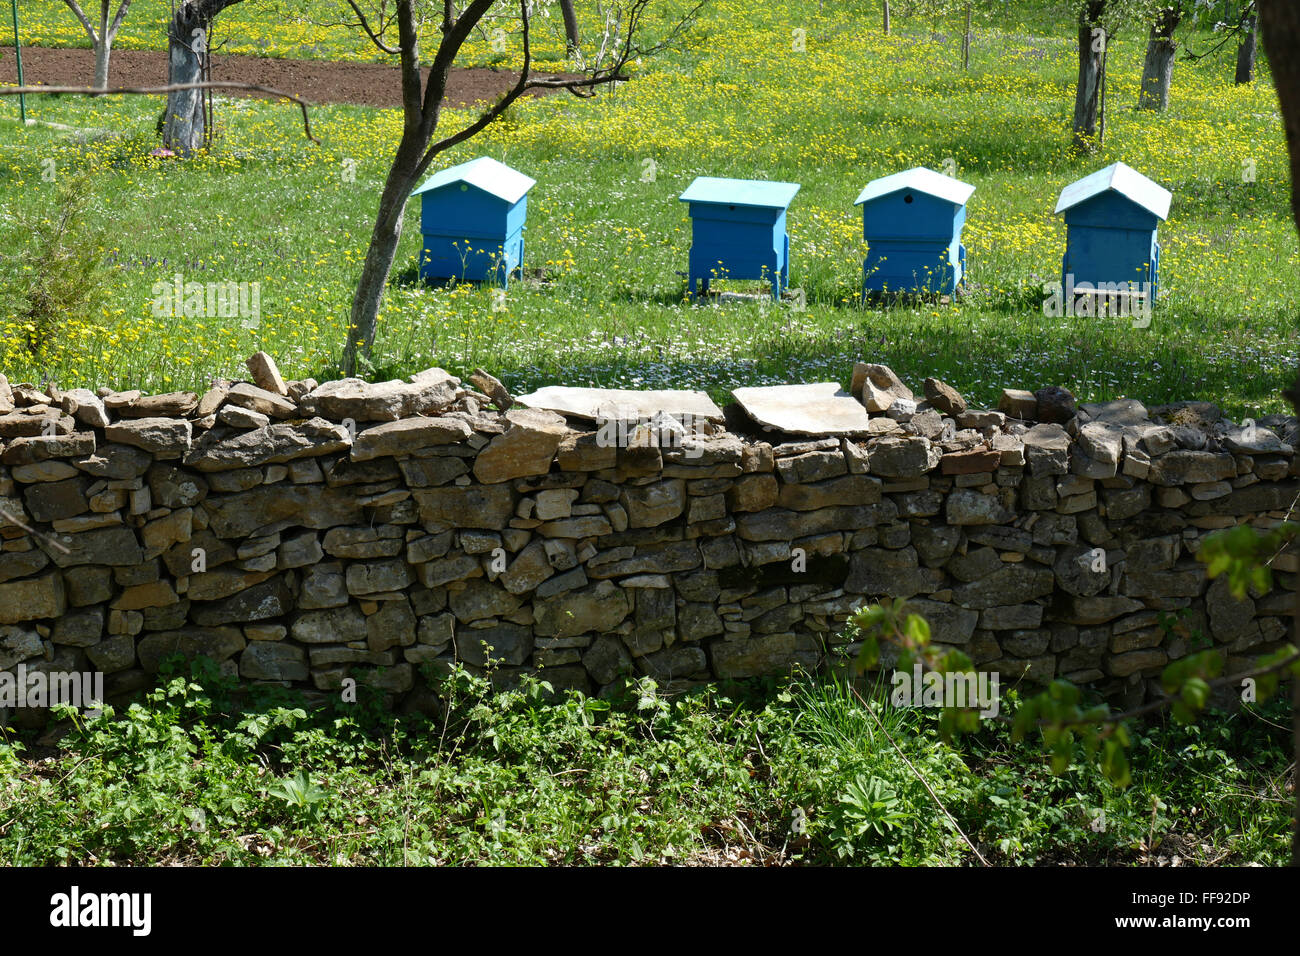 Jardin de printemps avec des ruches. Banque D'Images